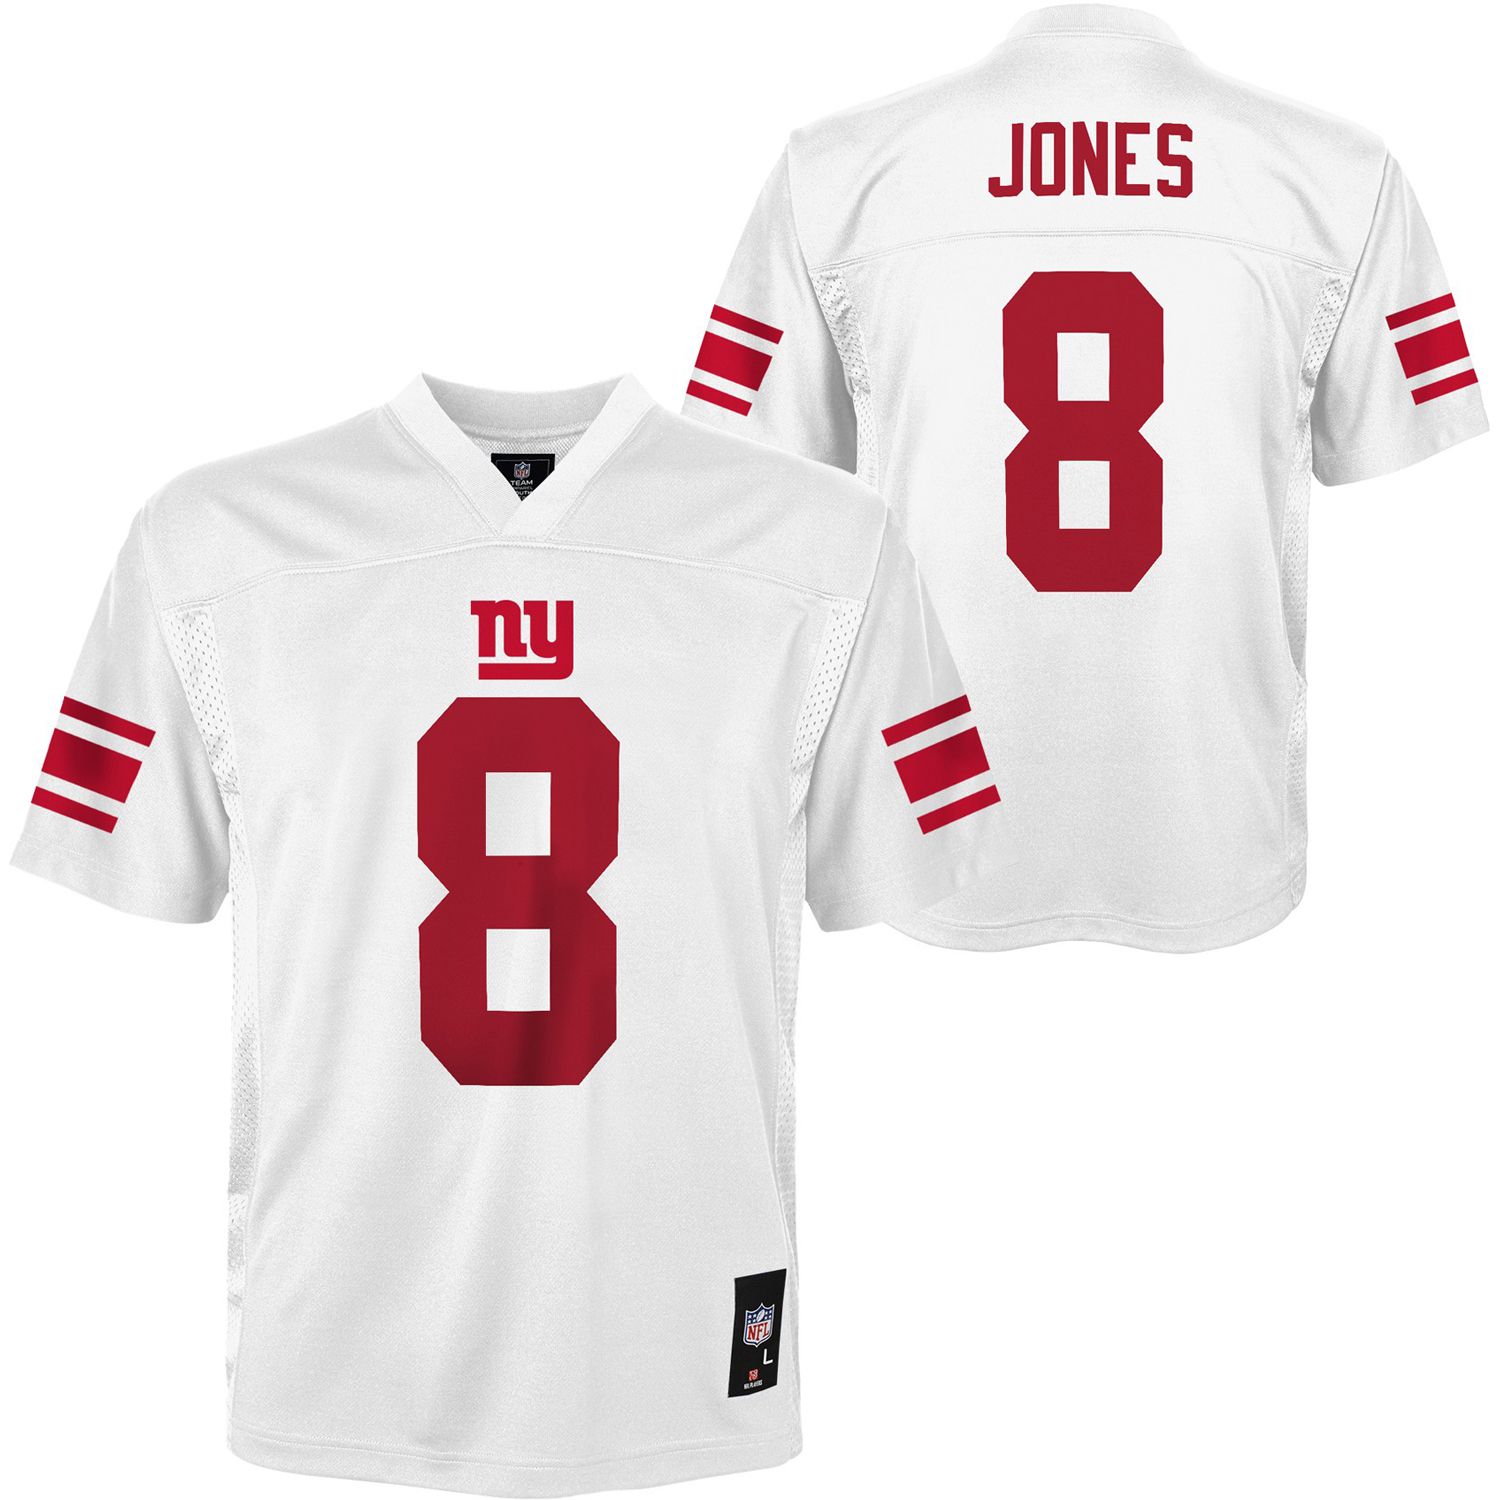 jones giants jersey